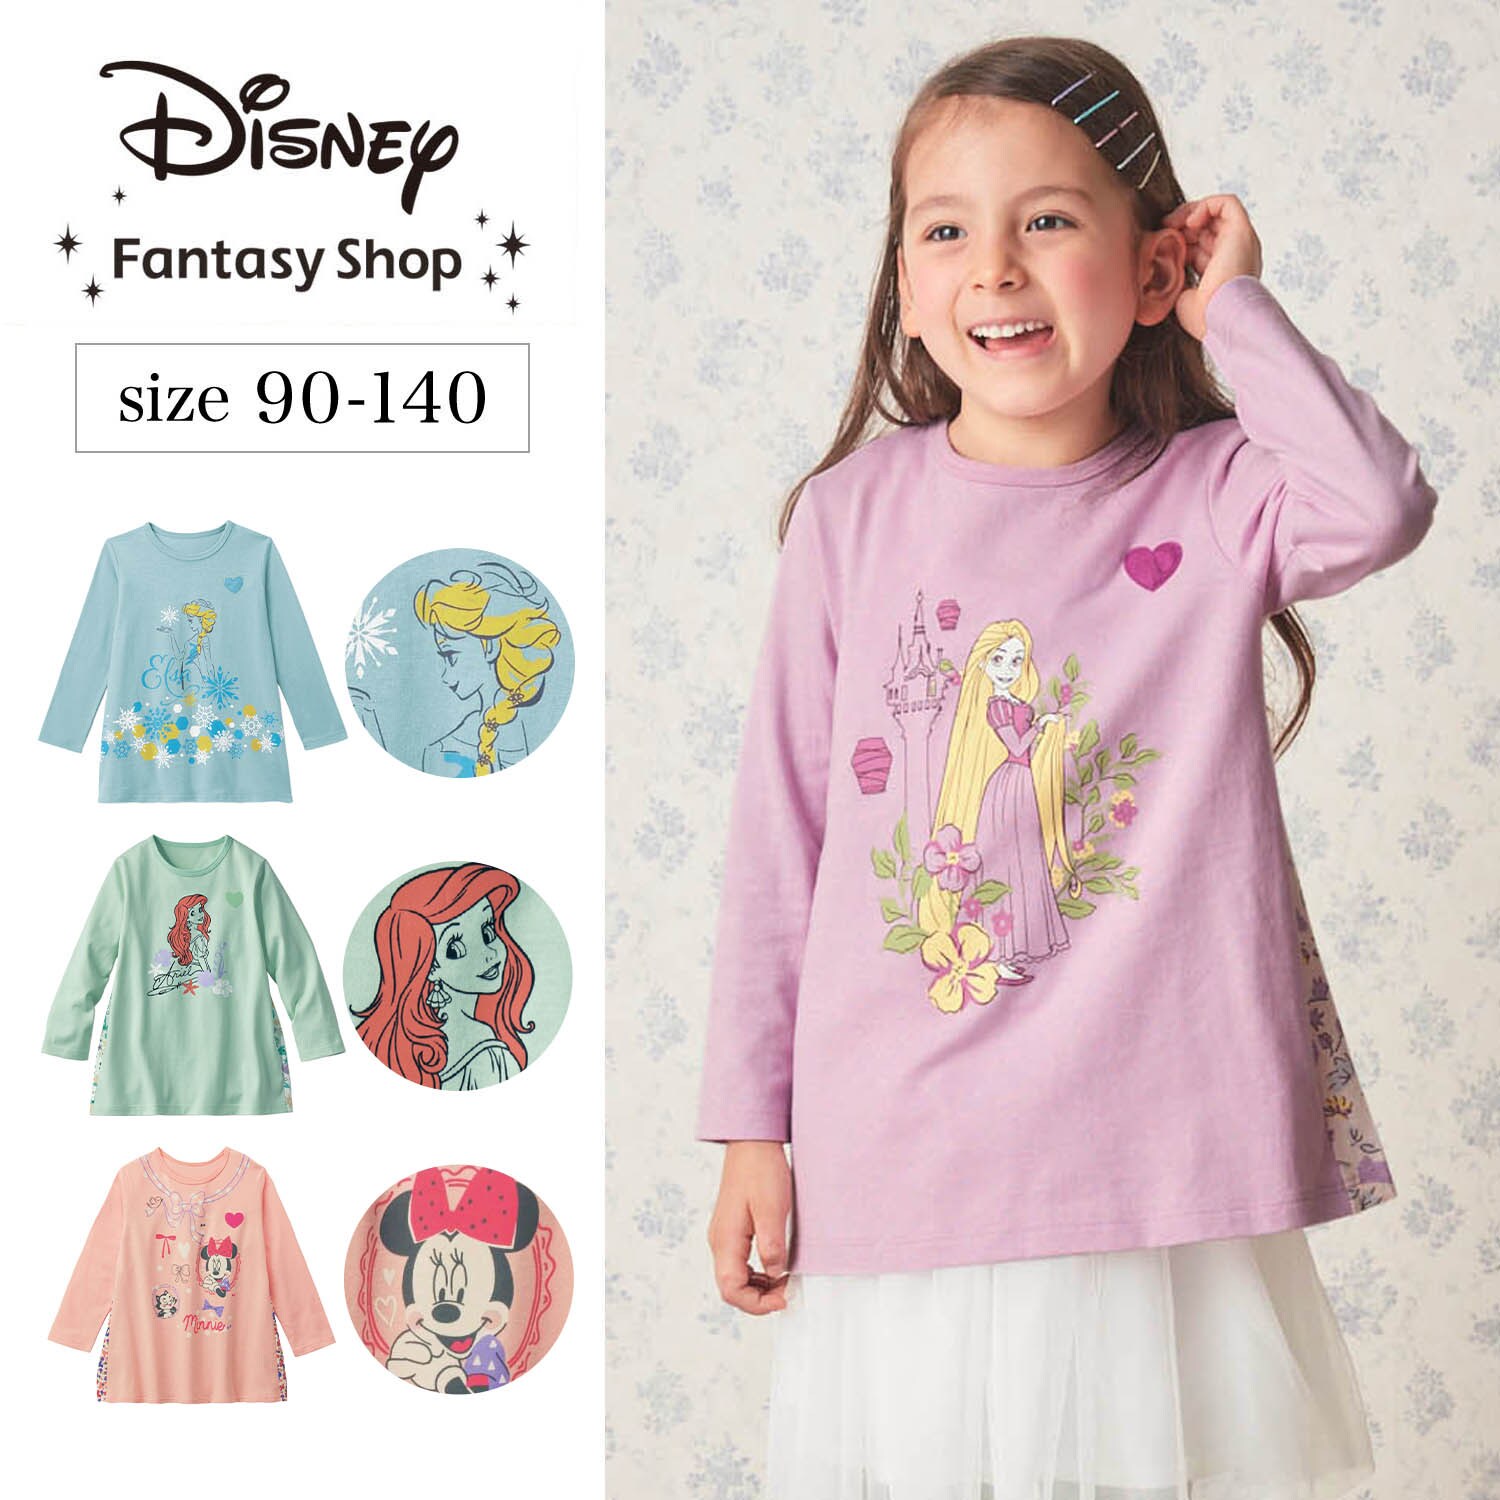 【ディズニー/Disney】名札ココ 後ろ姿がかわいい長袖切替えプルオーバー (選べるキャラクター)